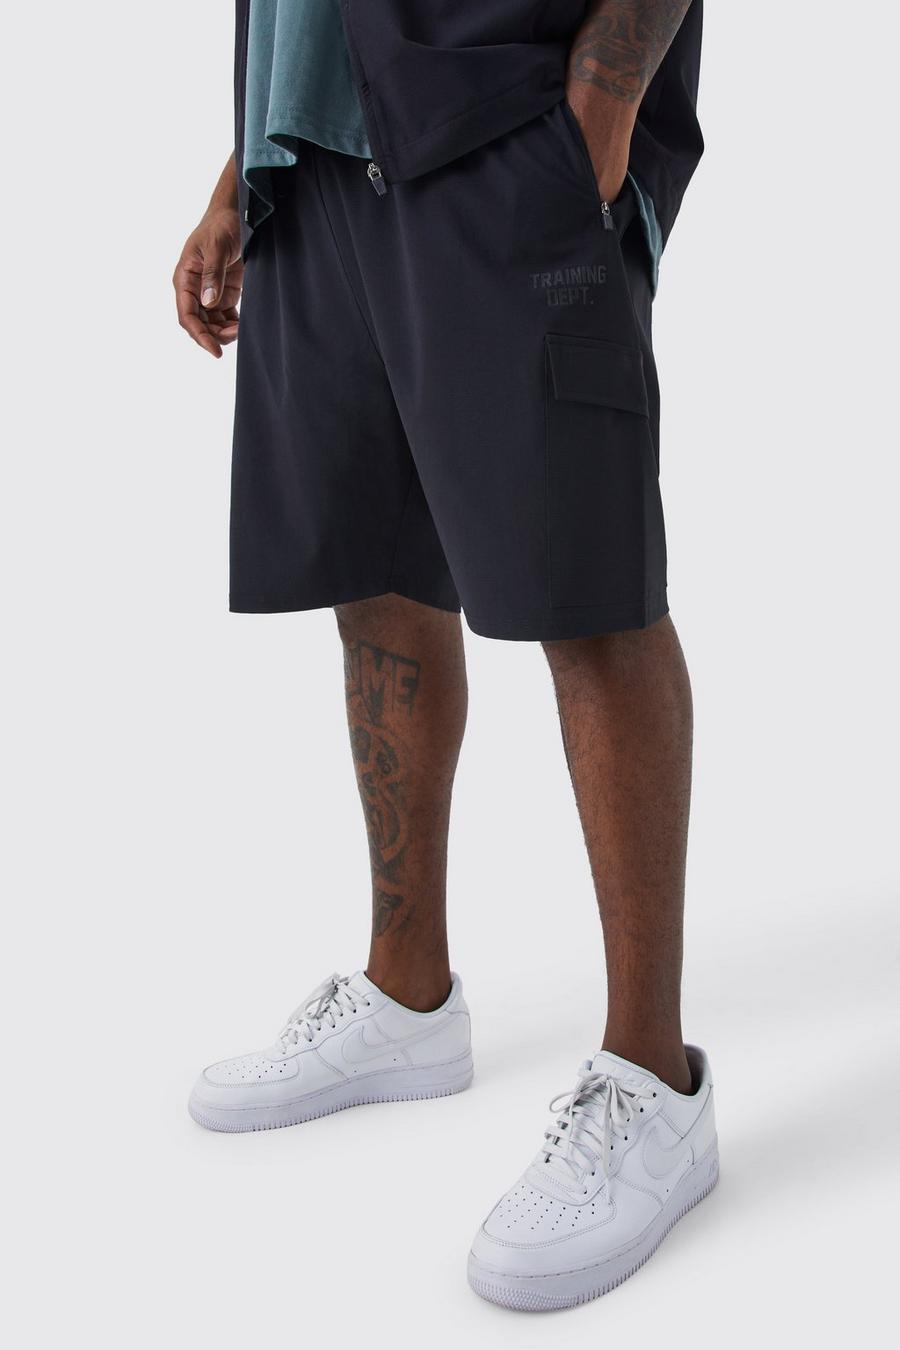 Big & Tall Shorts | Mens Plus Size Shorts | boohoo UK